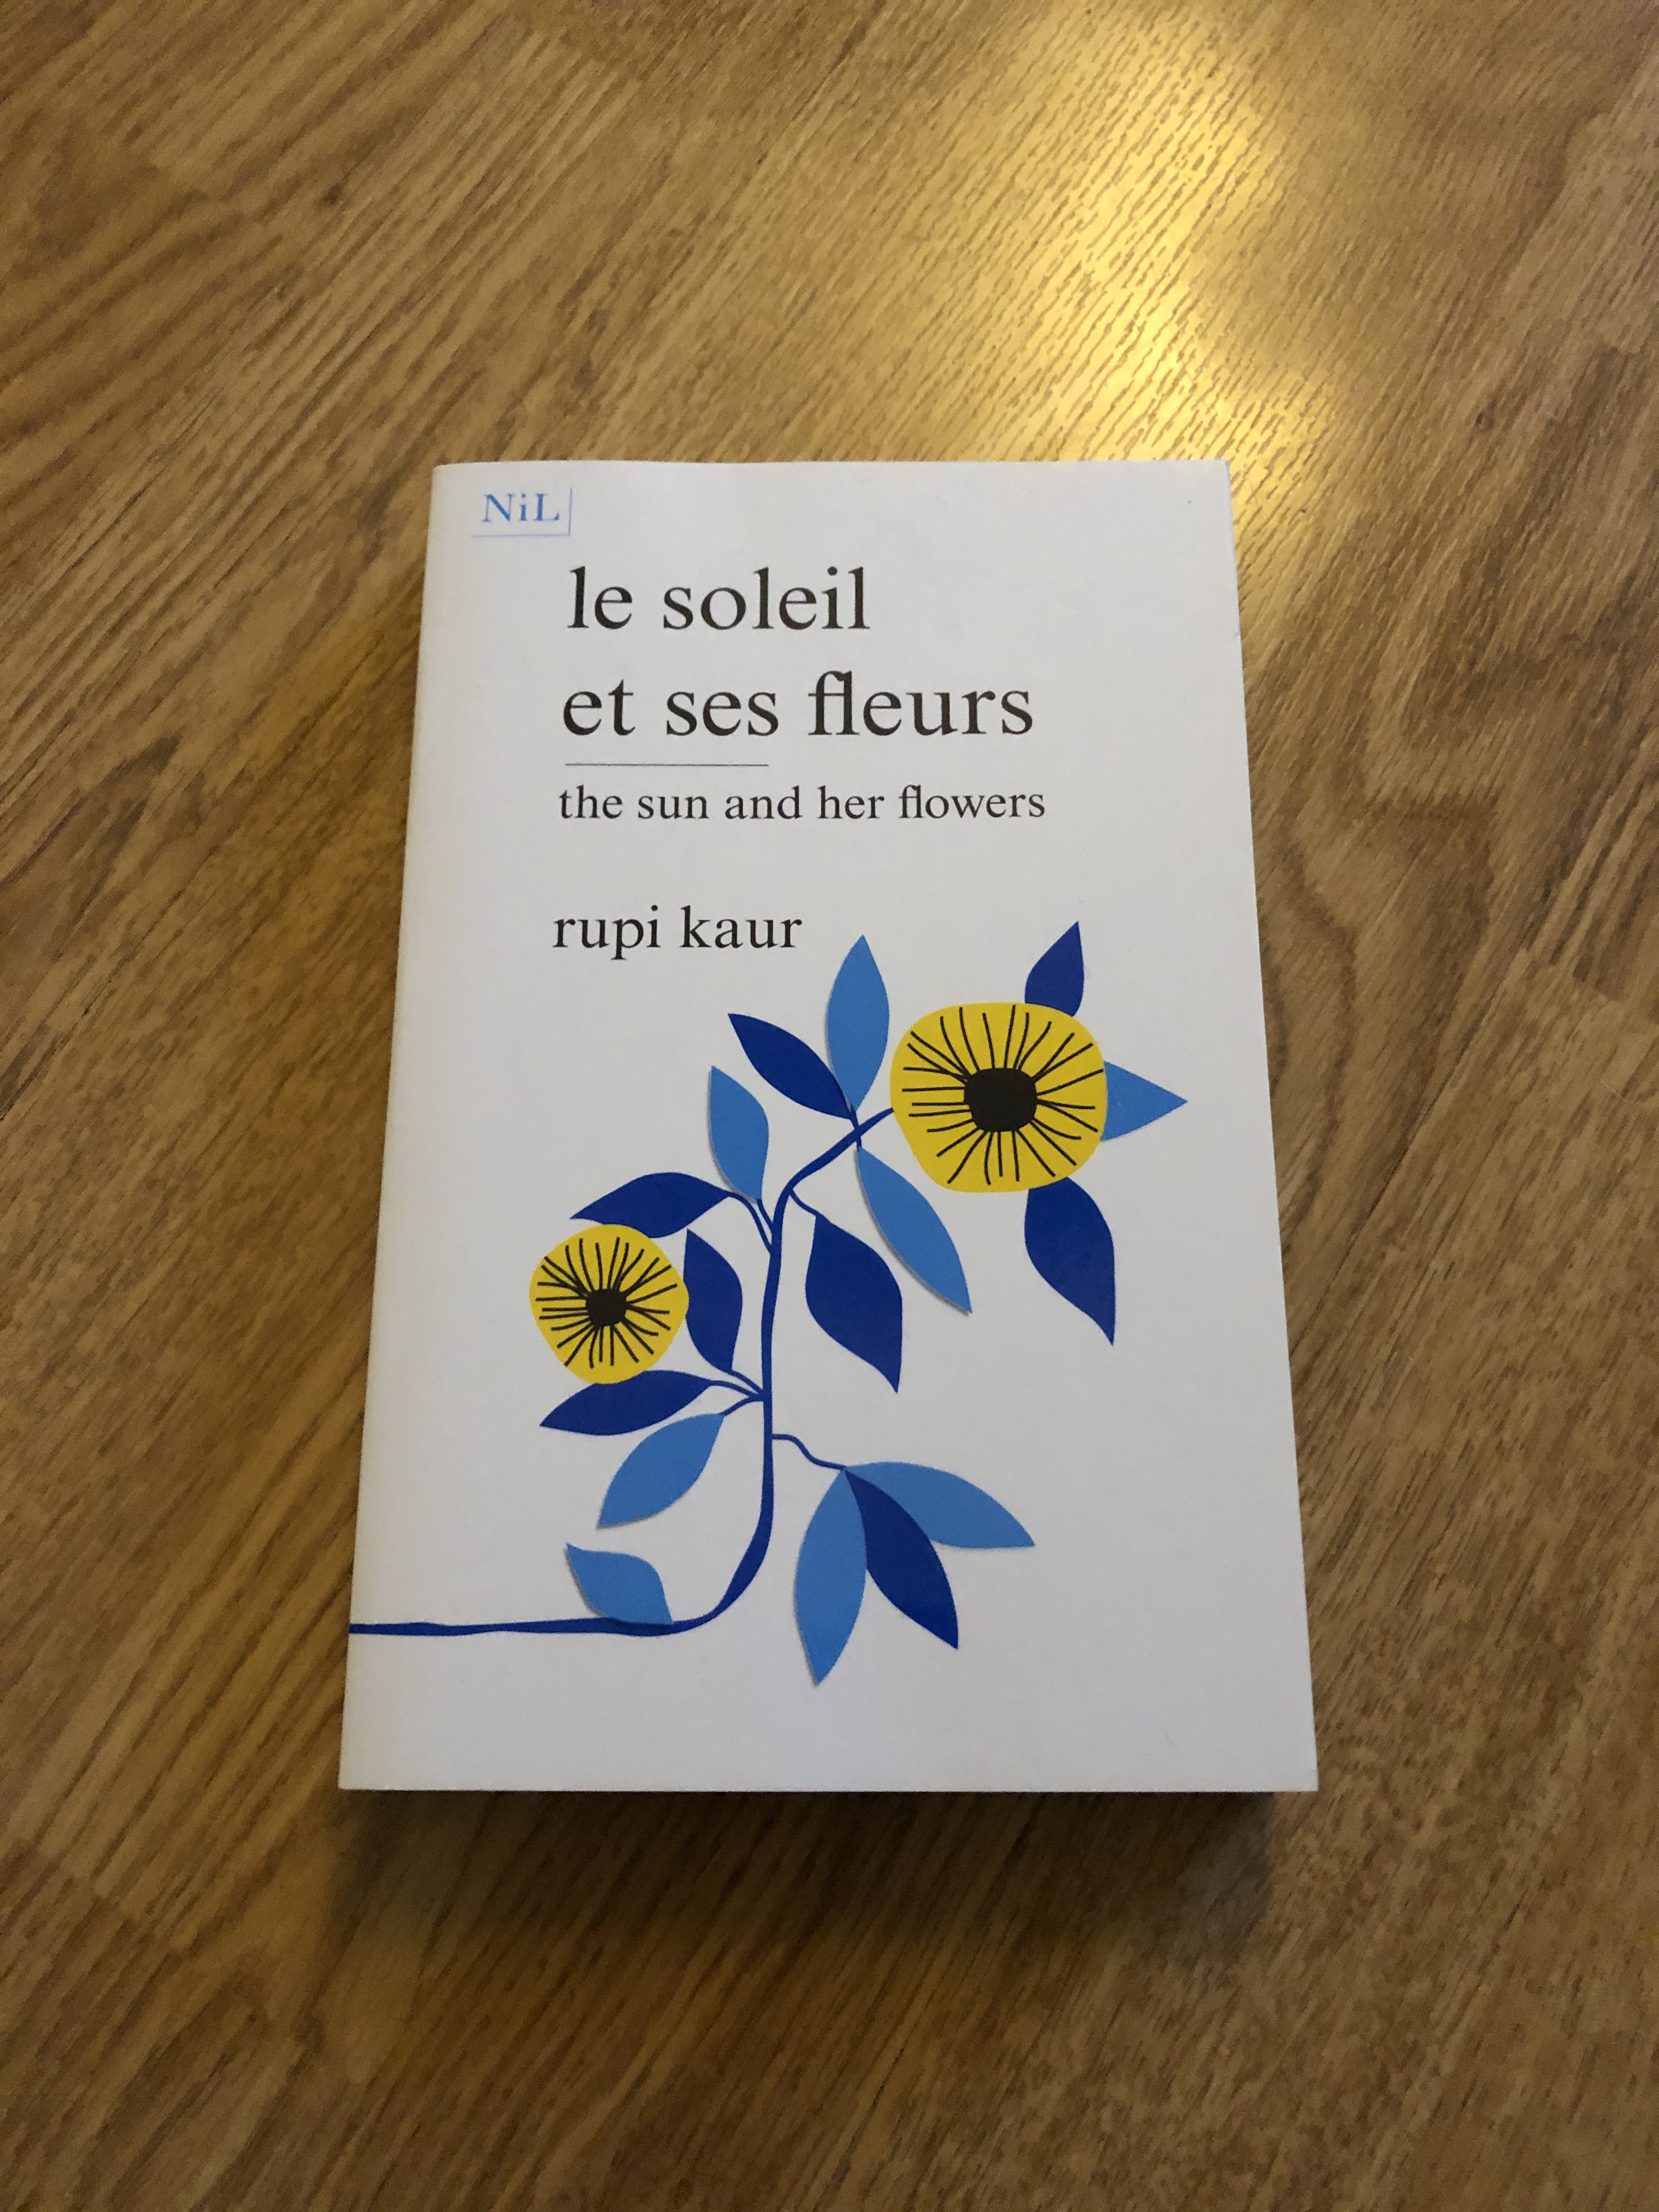 Stream episode Read ebook [PDF] Le Soleil et ses fleurs By Rupi